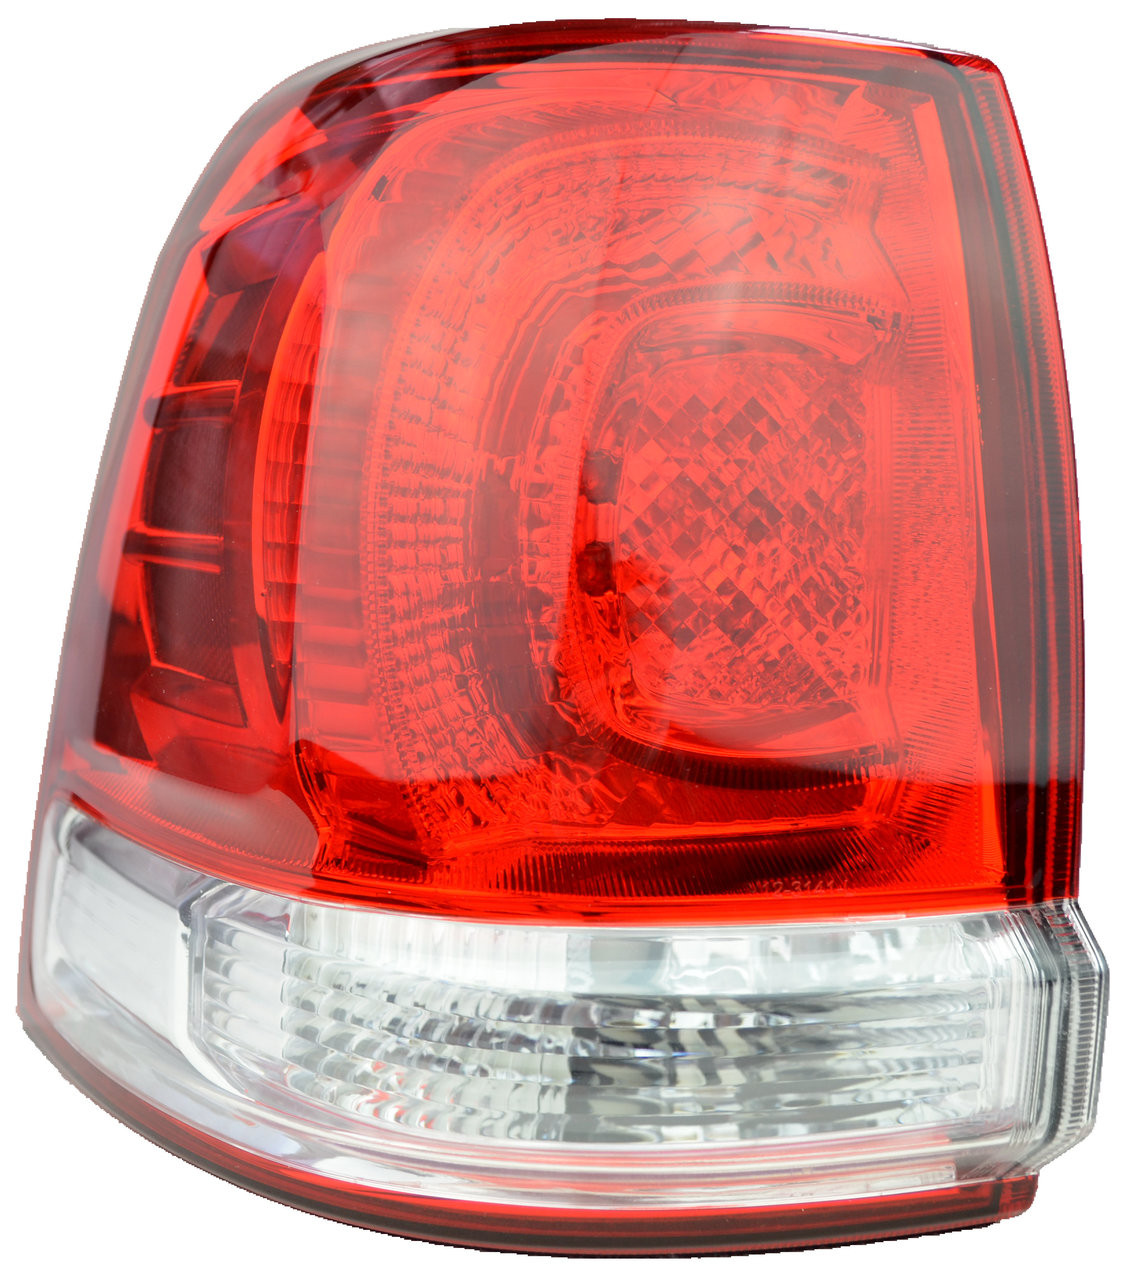 Tail Light for Toyota Landcruiser 08/07-02/12 New Left Rear Lamp 200 LED 08 09 10 11